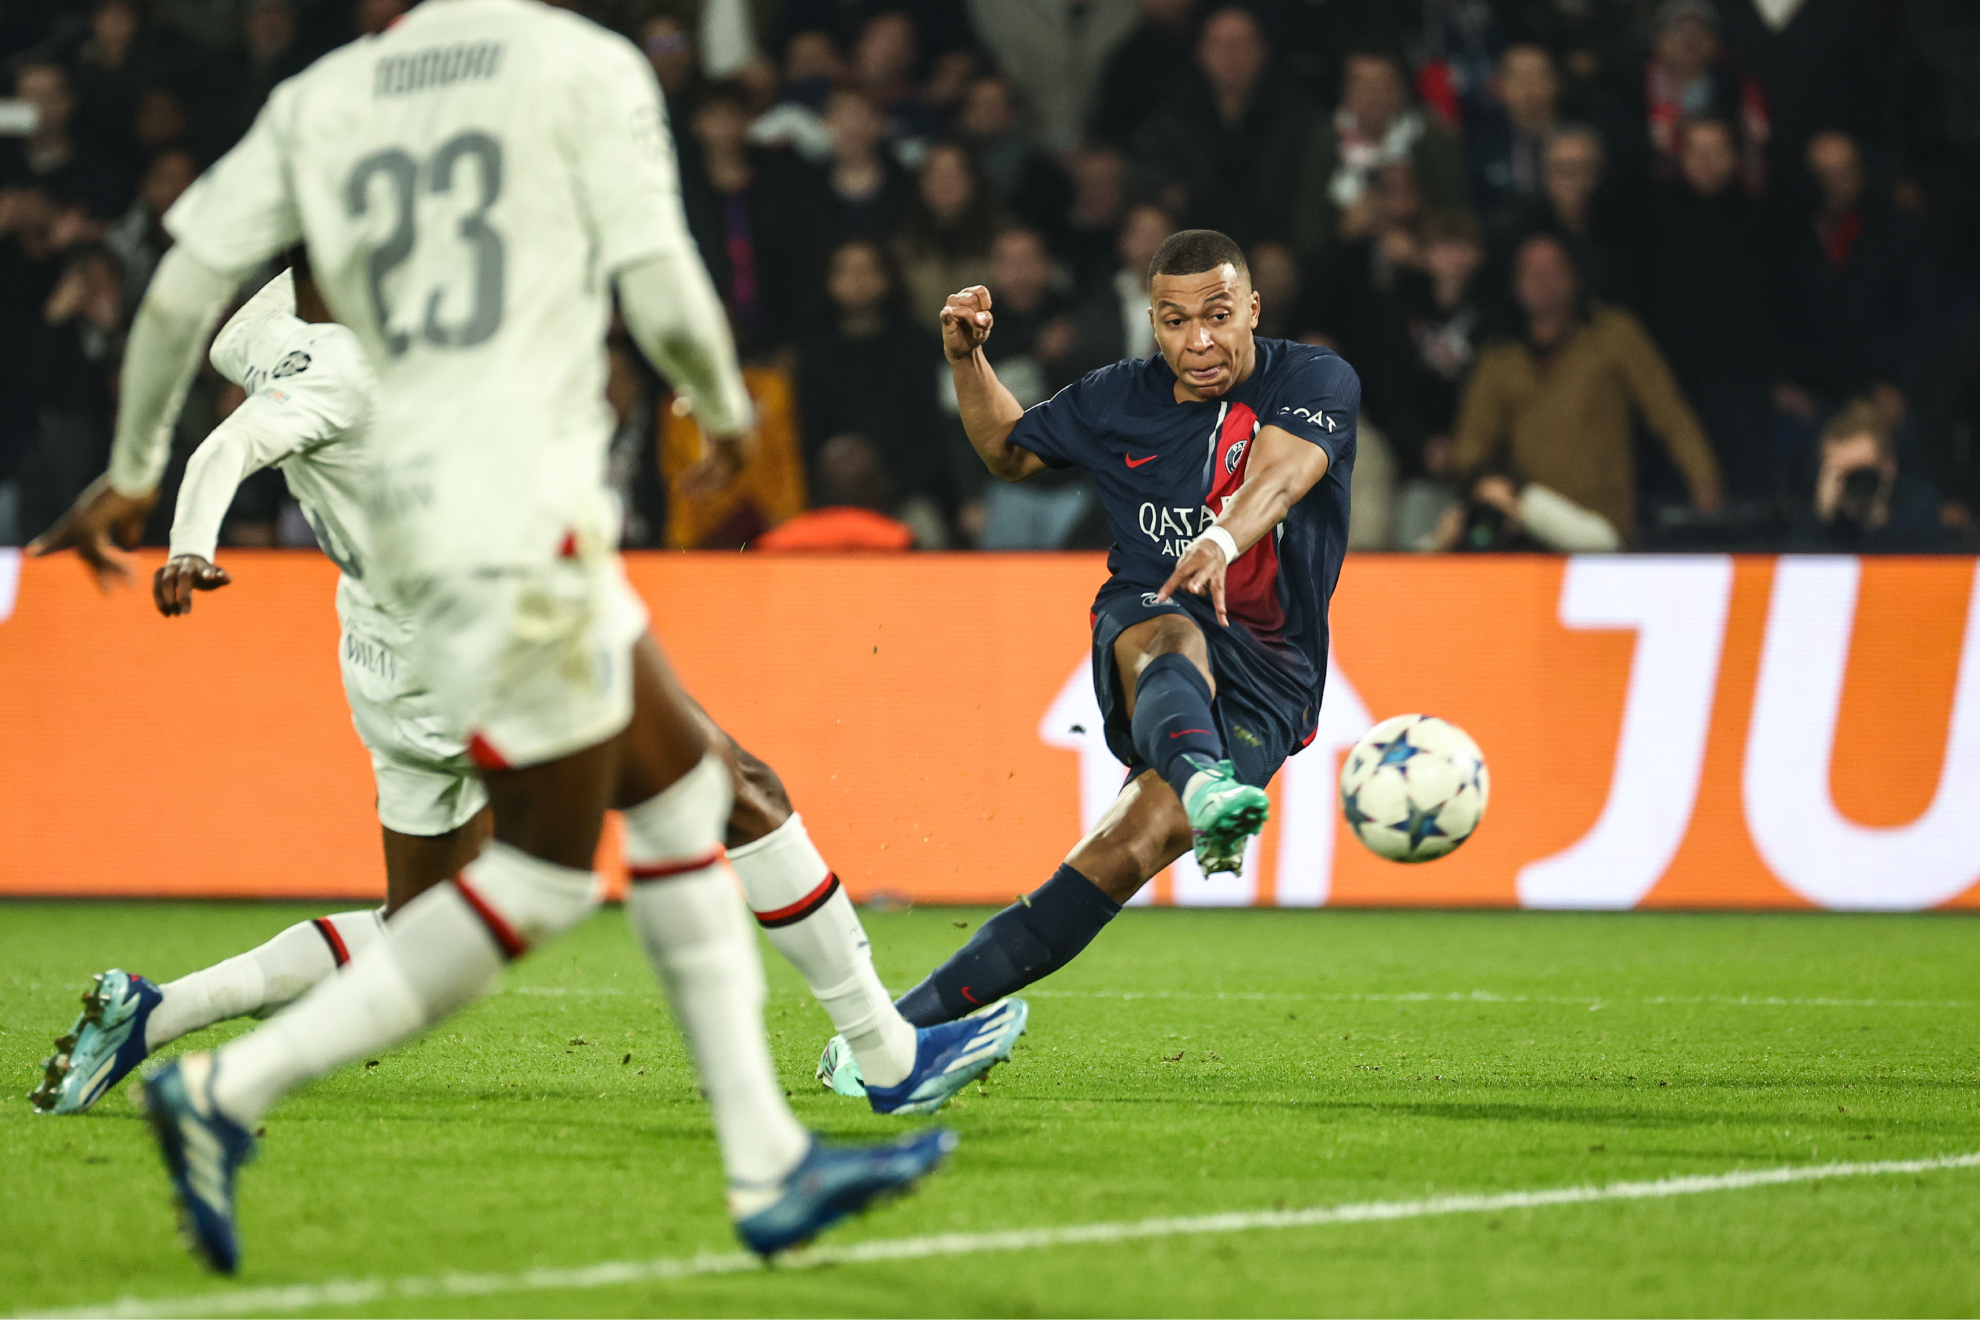 PSG - Montpellier: resumen, resultado y goles | Ligue 1